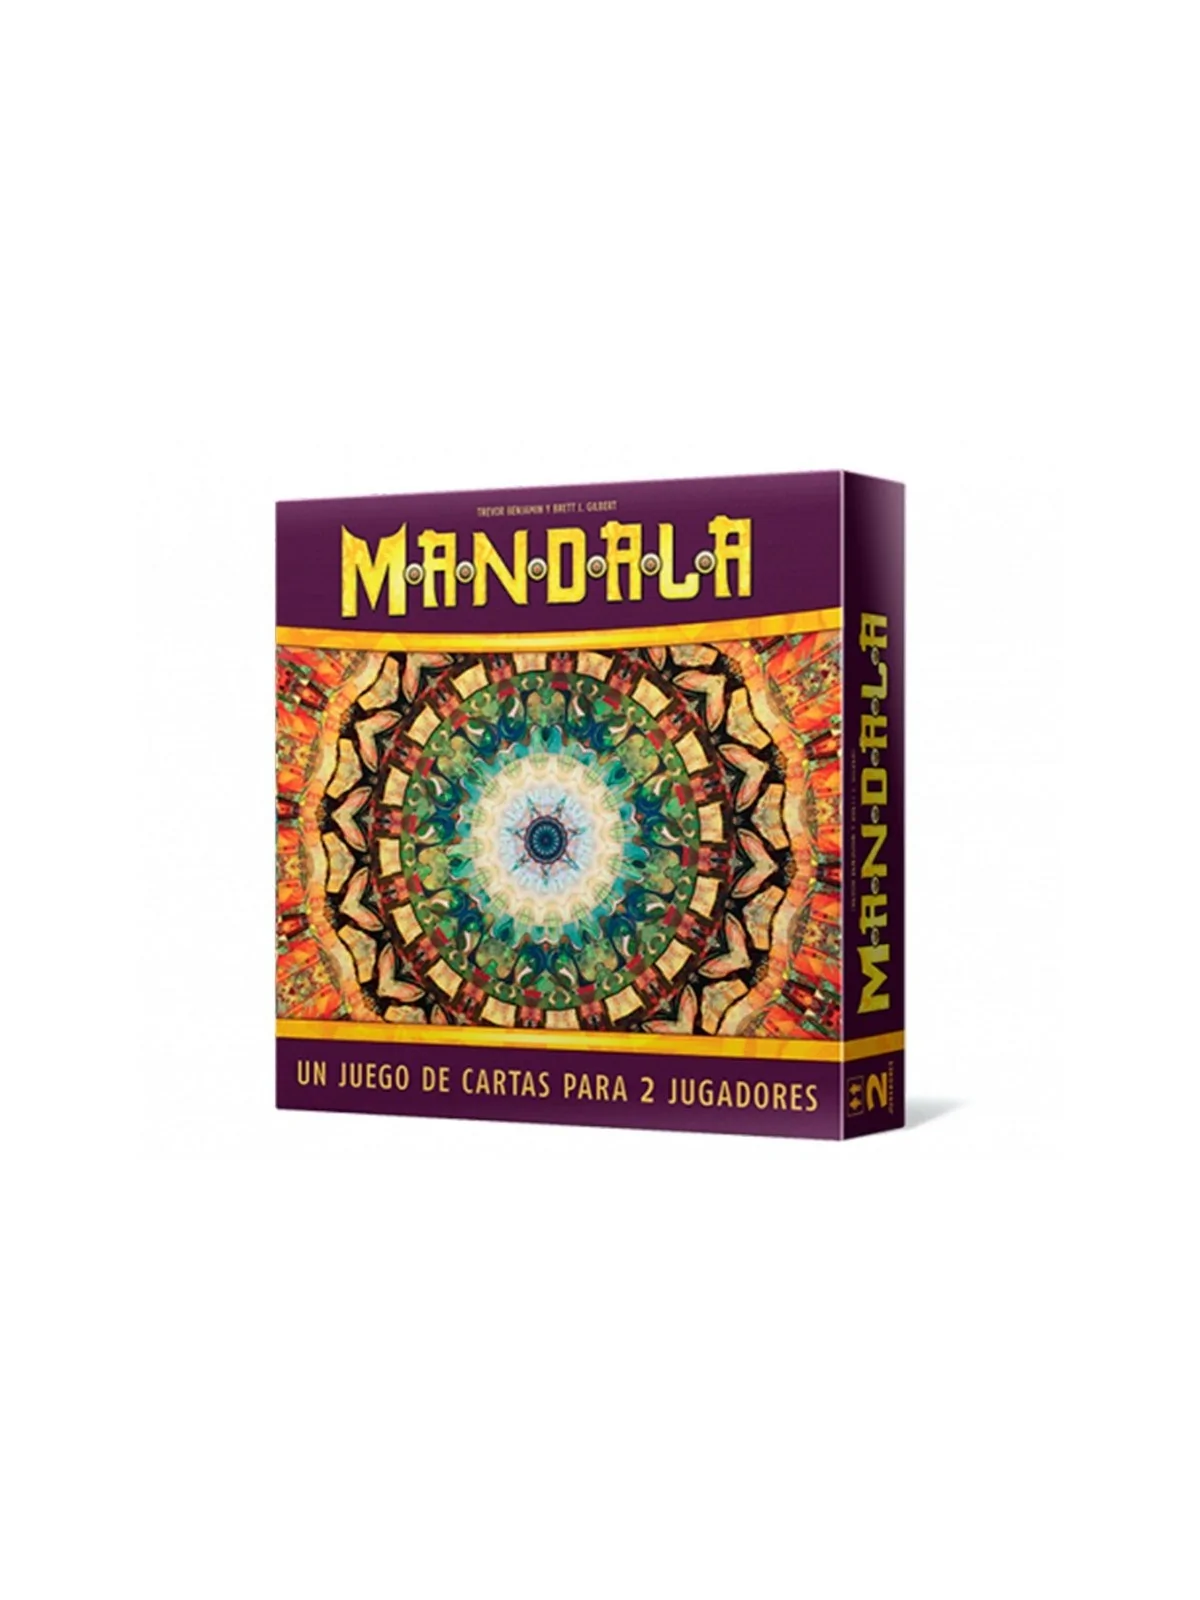 Comprar Mandala barato al mejor precio 19,79 € de Lookout Games